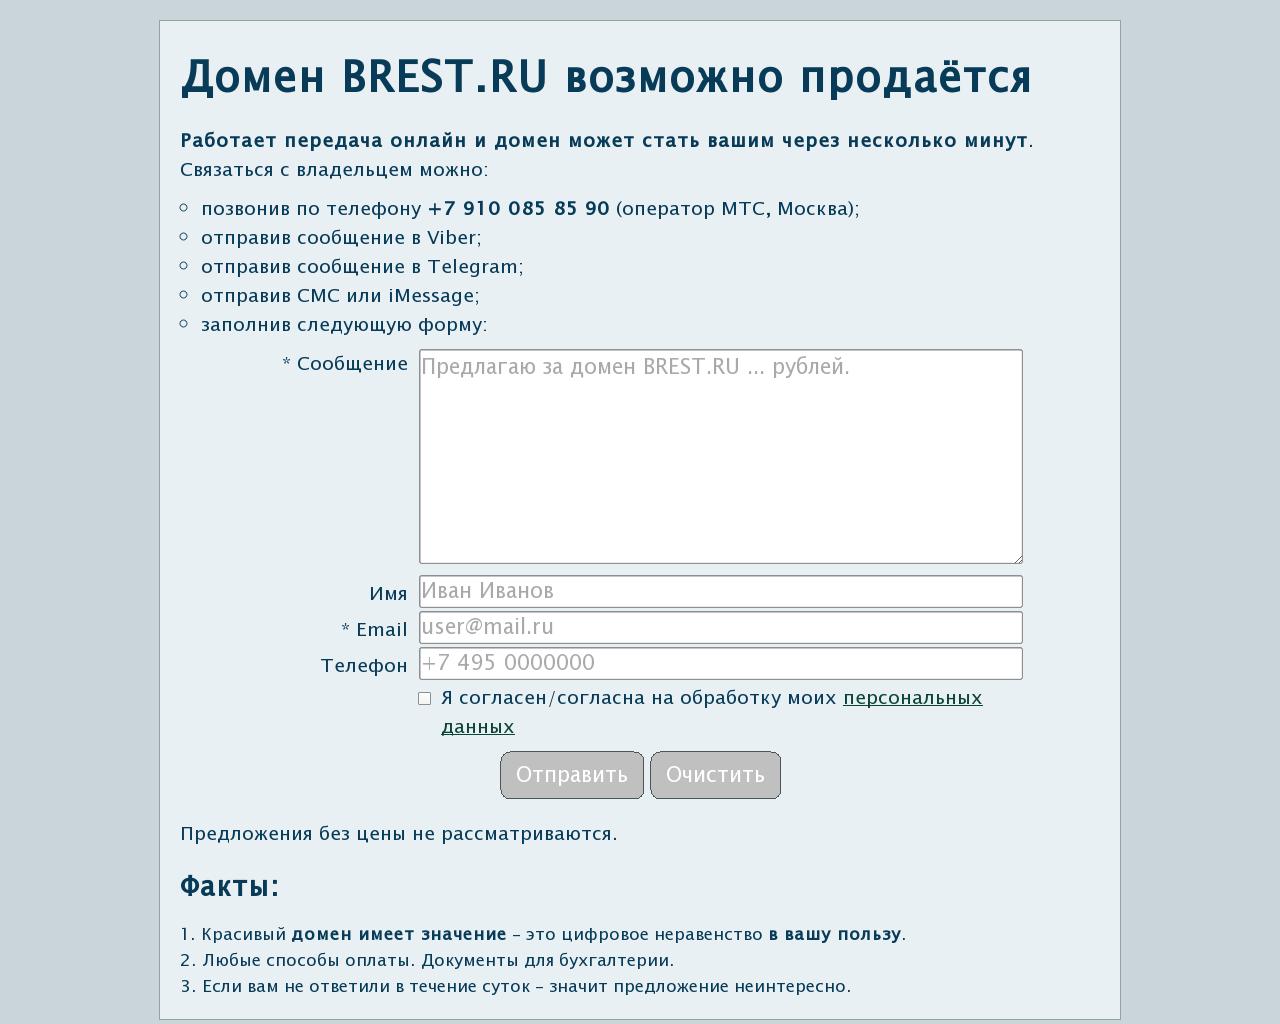 Изображение сайта brest.ru в разрешении 1280x1024